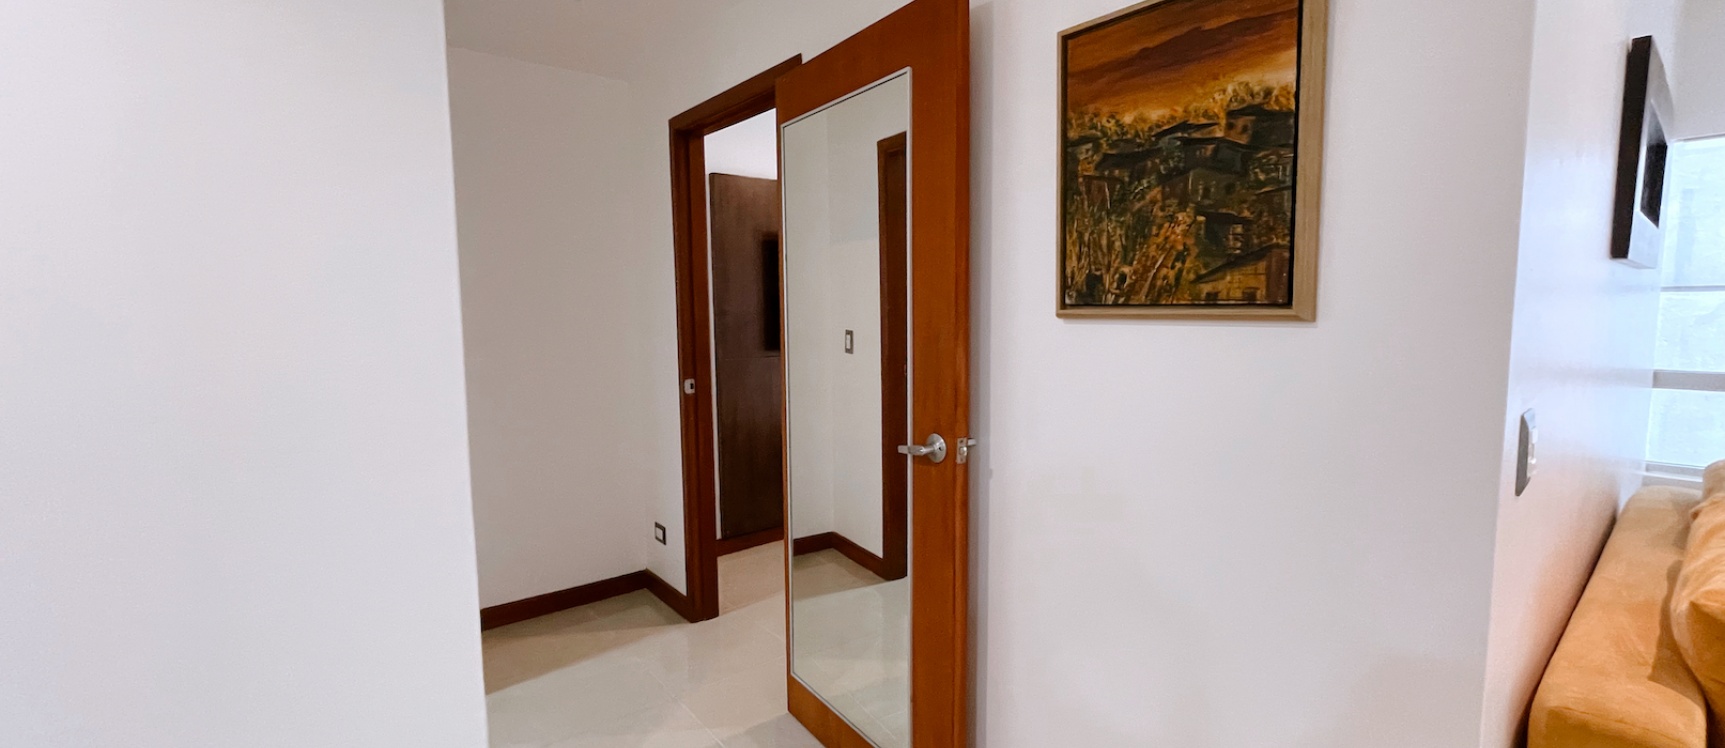 GeoBienes - Suite amoblada en alquiler (Incluye Wifi y DirectTV) - Torre del Sol I - Plusvalia Guayaquil Casas de venta y alquiler Inmobiliaria Ecuador